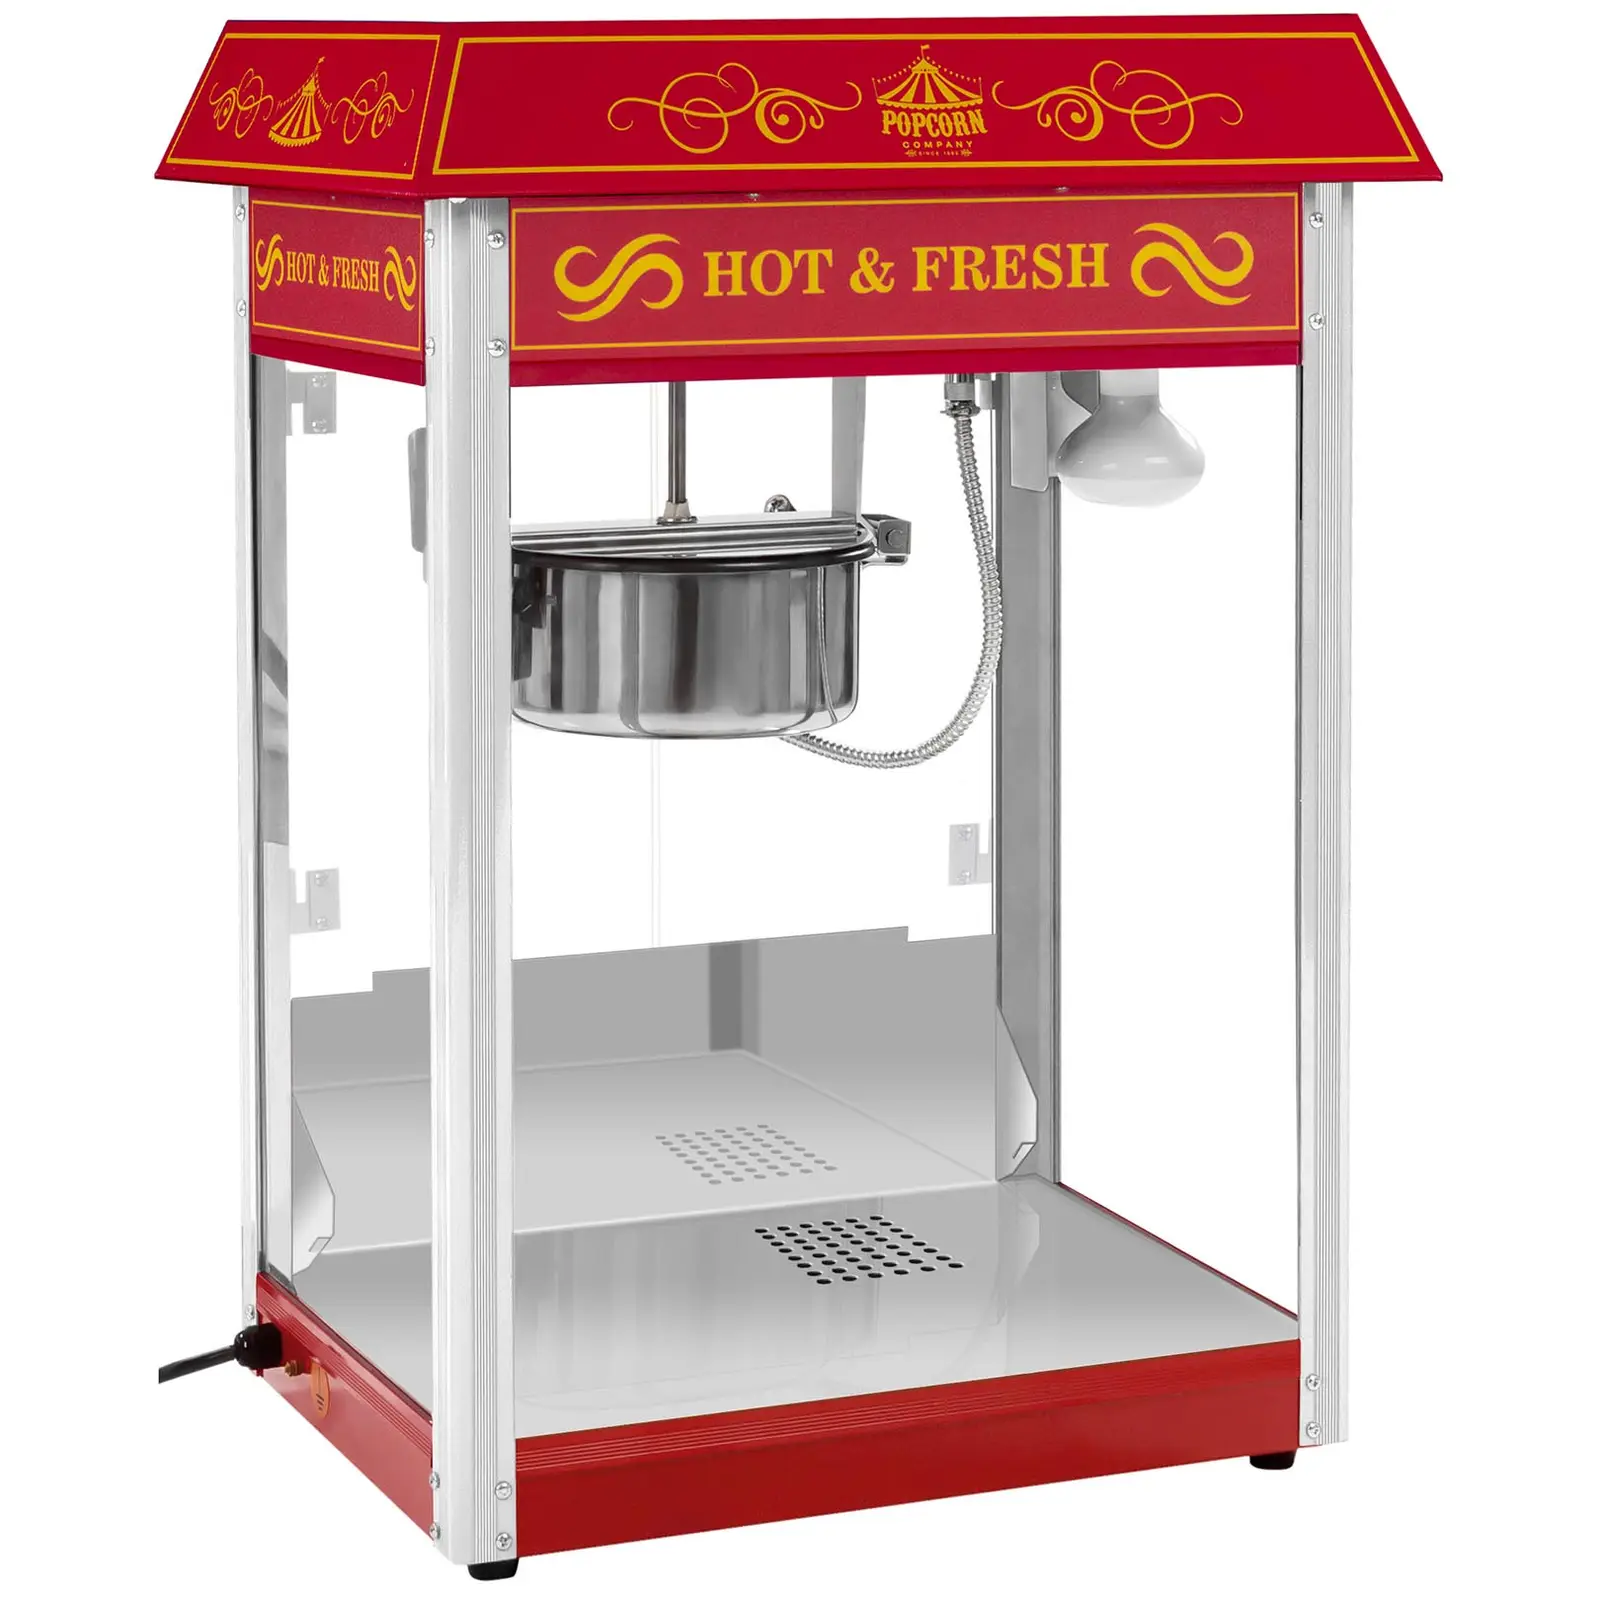 Set machine à popcorn avec chariot et ampoule LED - Allure rétro - Rouge